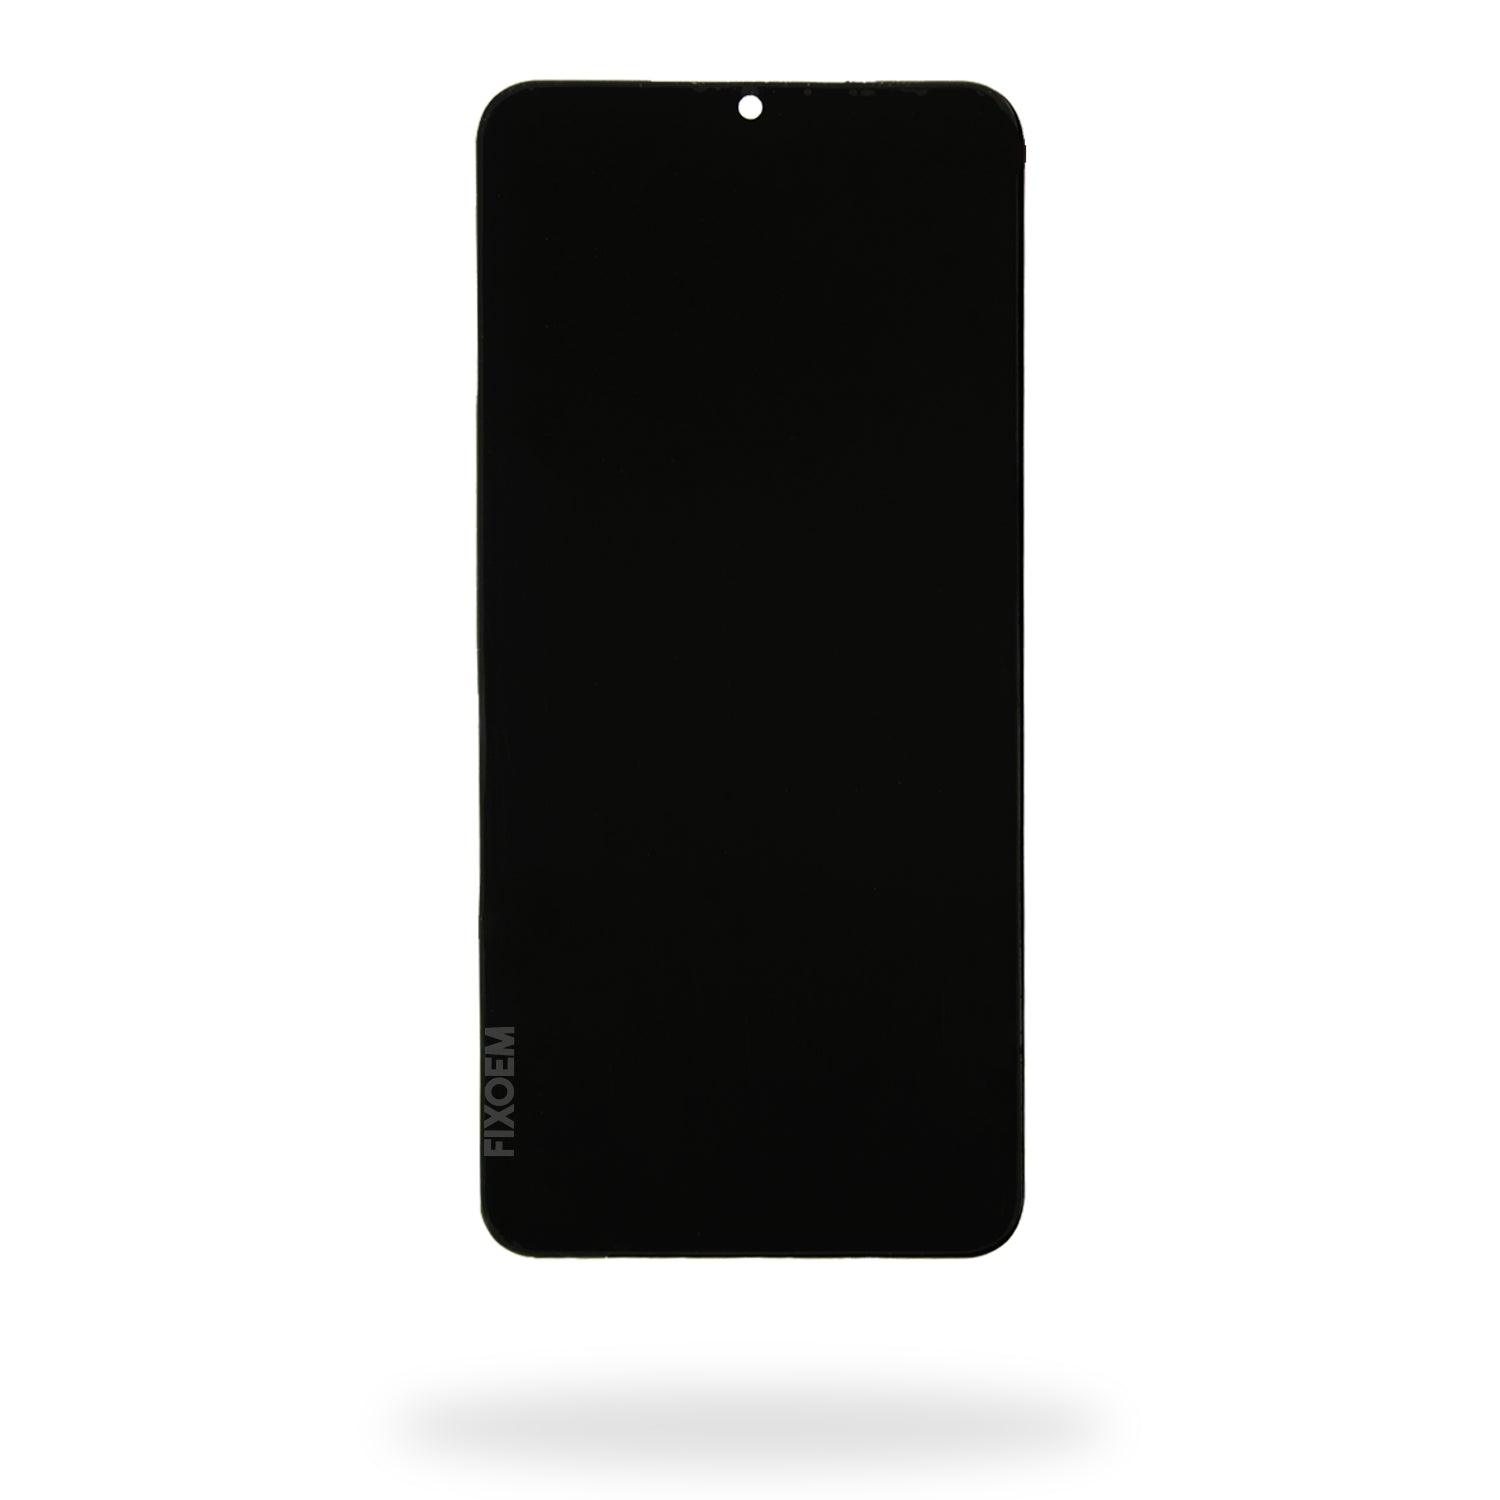 Display Xiaomi Mi 9 Se Ips M1903F2A a solo $ 1380.00 Refaccion y puestos celulares, refurbish y microelectronica.- FixOEM